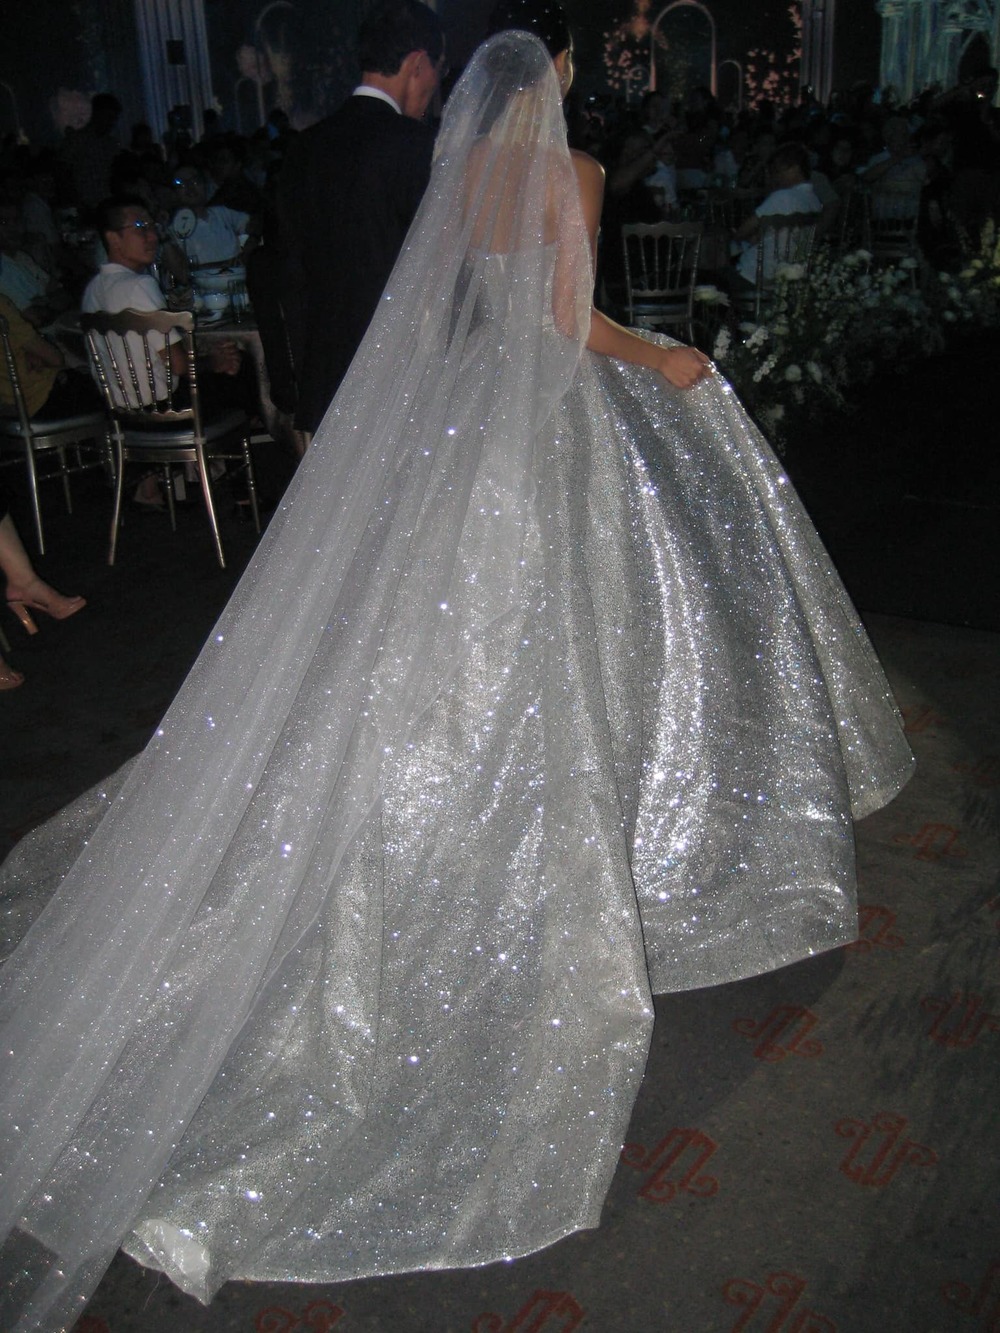  
 Mỹ nhân Hà thành hoá công chúa với chiếc váy đính kết kim tuyến lấp lánh. (Ảnh: FB Kieu Ly Pham)